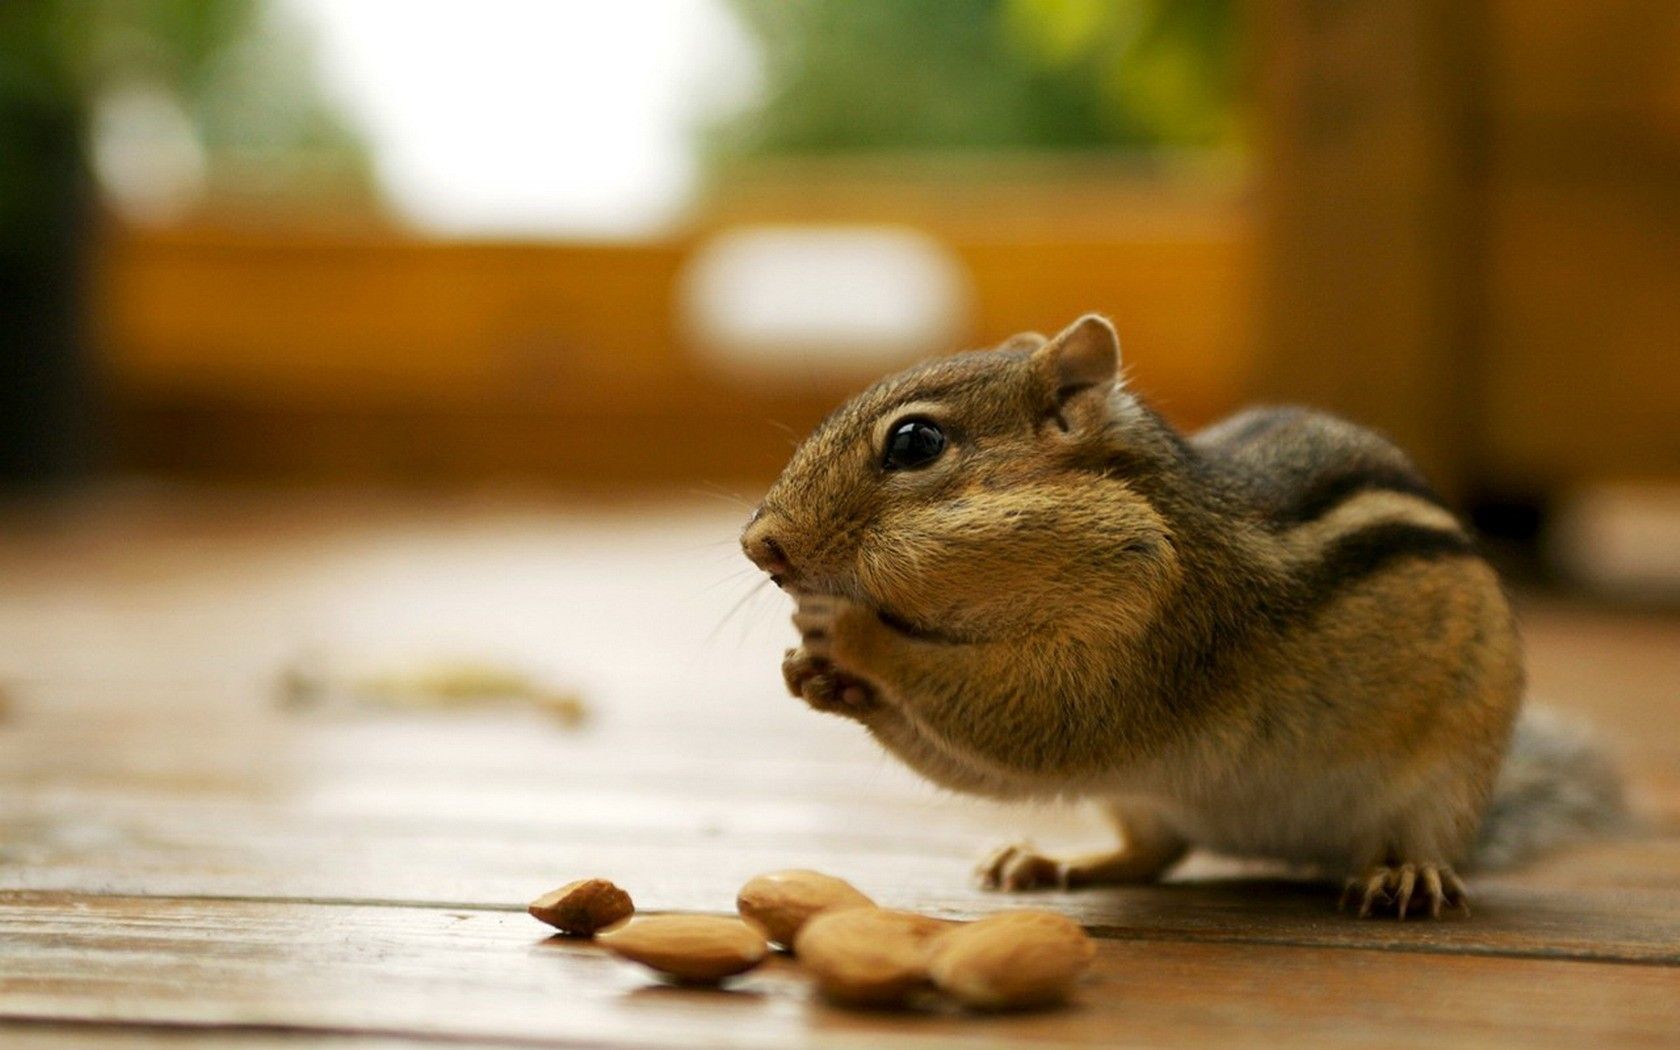 دانلود عکس فوق العاده قشنگ از سنجاب درحال خوردن بادام 